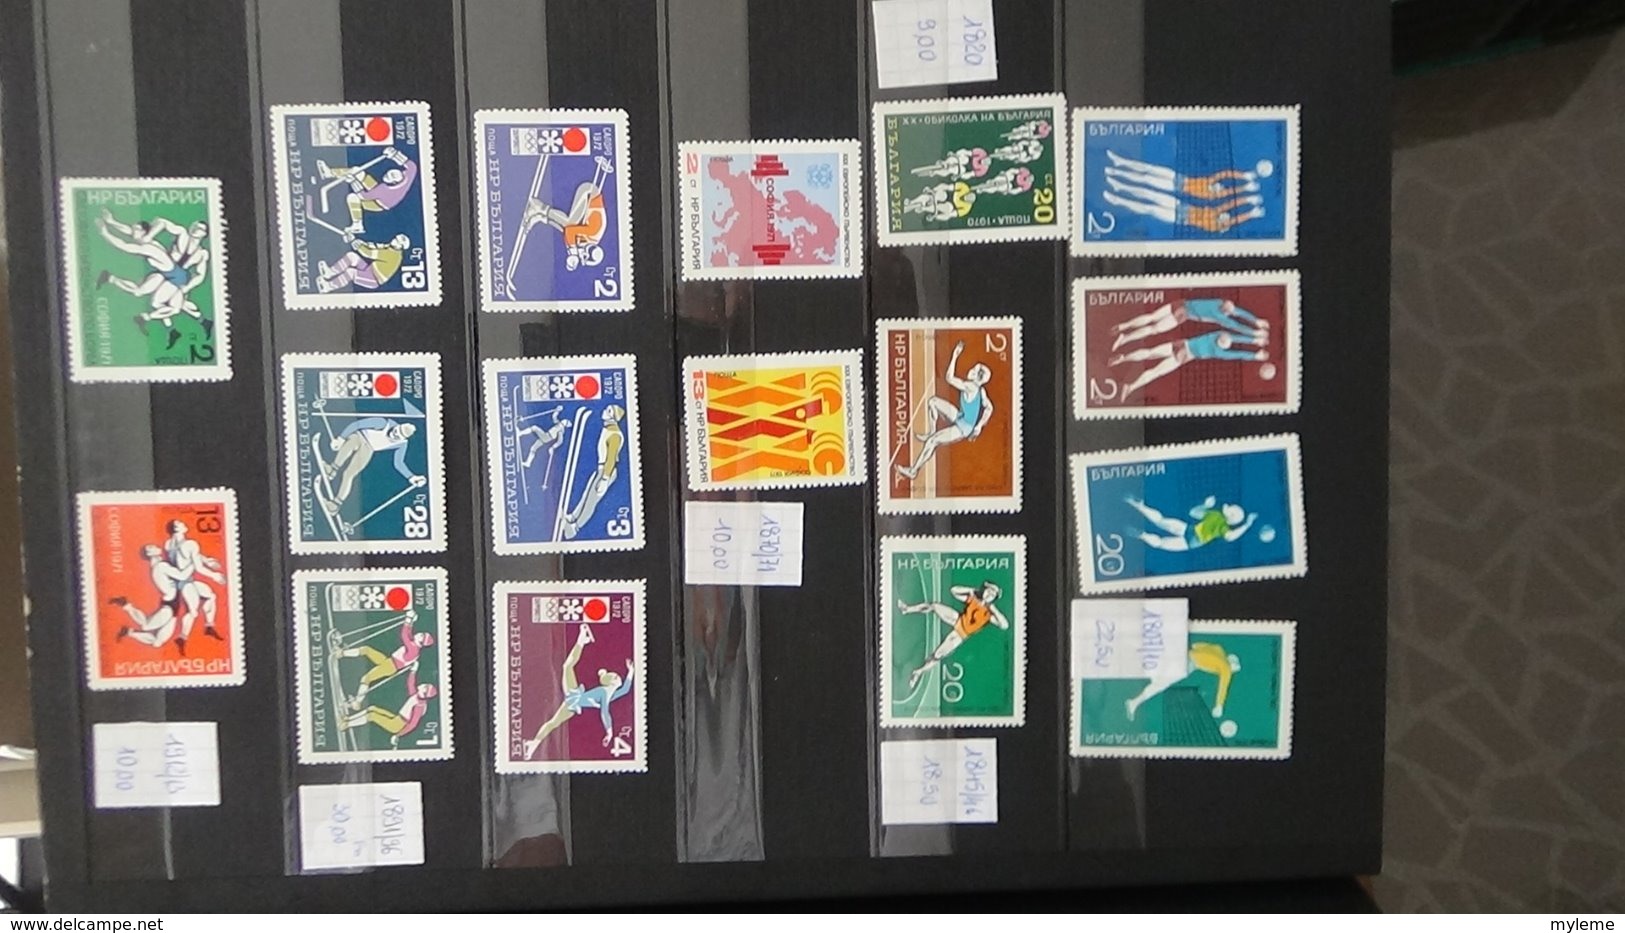 Belle thématique en timbres et blocs ** sur le sport . A saisir !!!